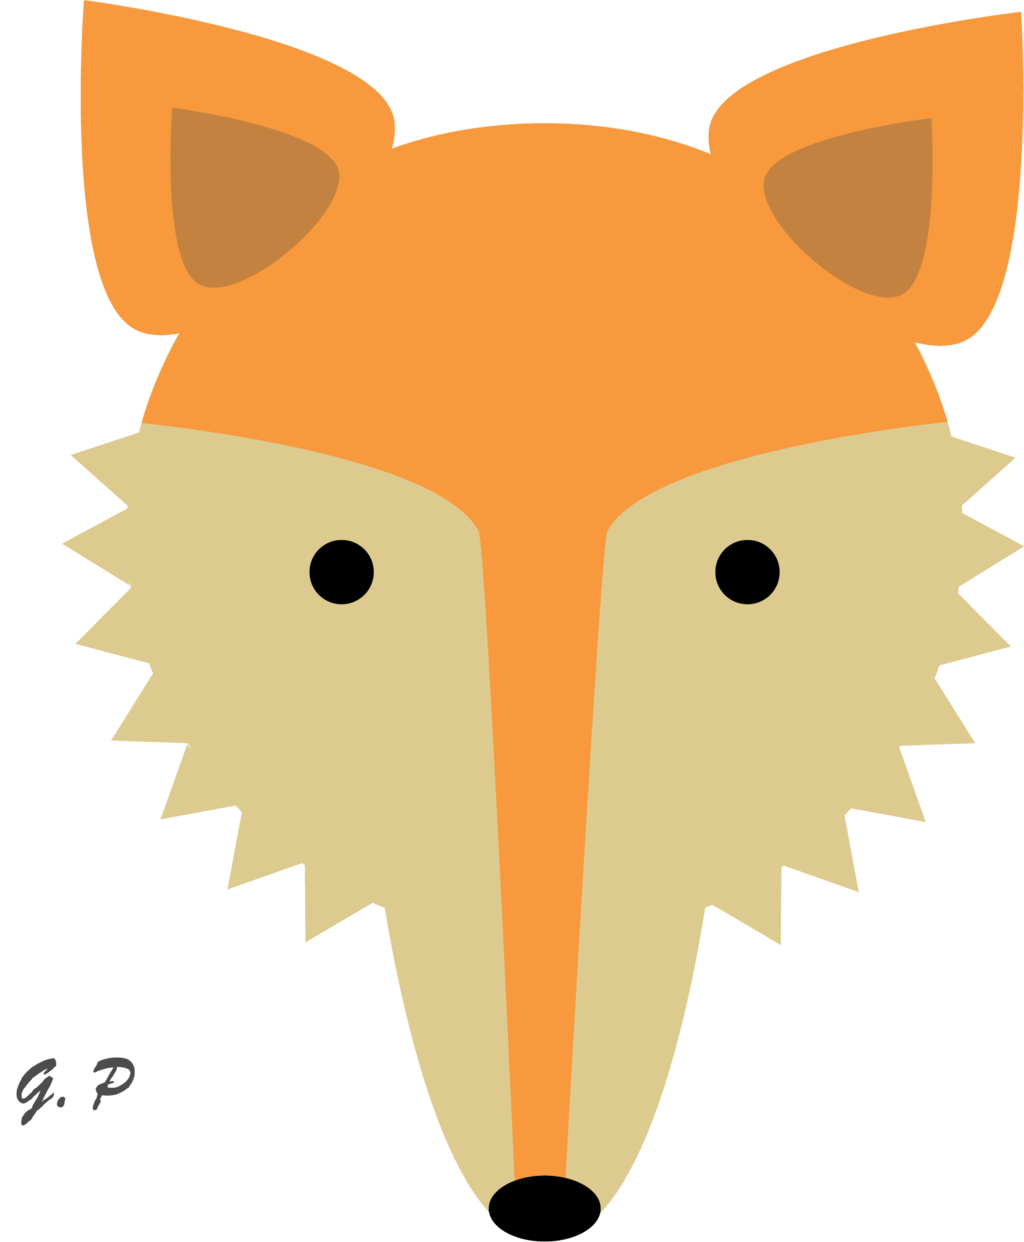 Head at getdrawings com. Clipart tiger fox